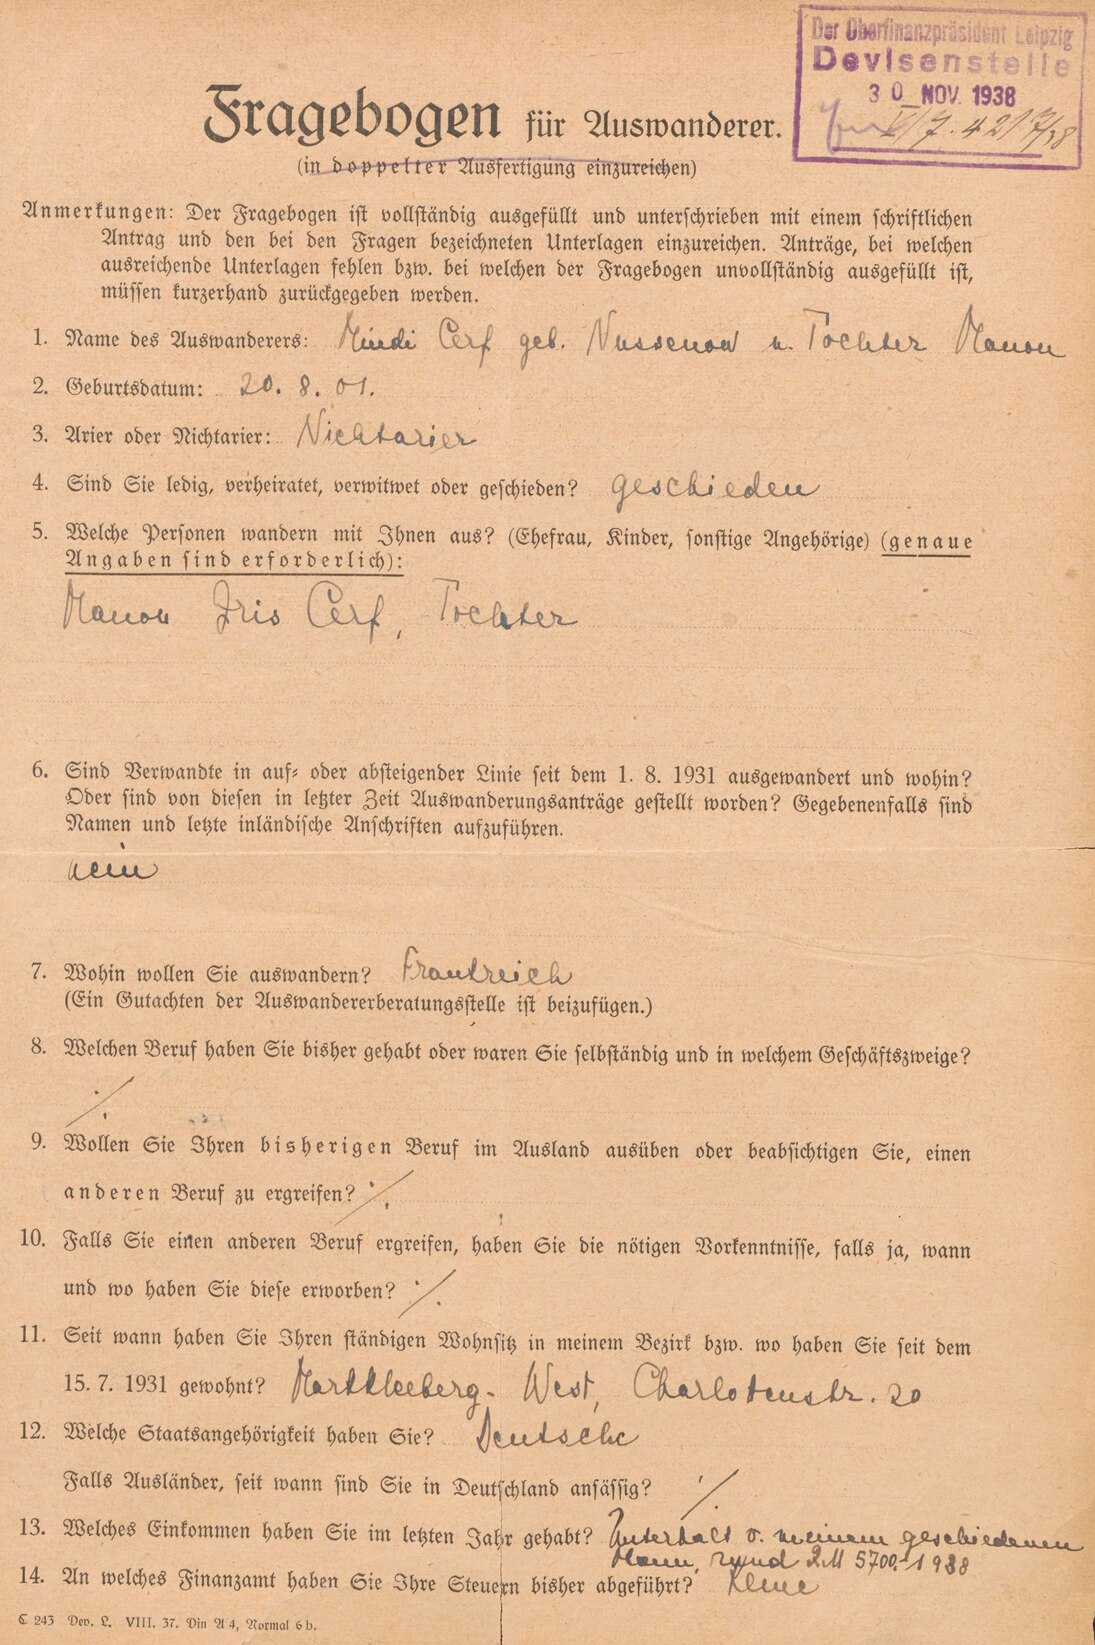 Fragebogen zur Auswanderung von Mindi Cerf und ihrer Tochter für die Finanzbehörden, 29. November 1938 (Vorderseite) (SächsStA-L, 20206 Oberfinanzpräsident Leipzig, Nr. 165)